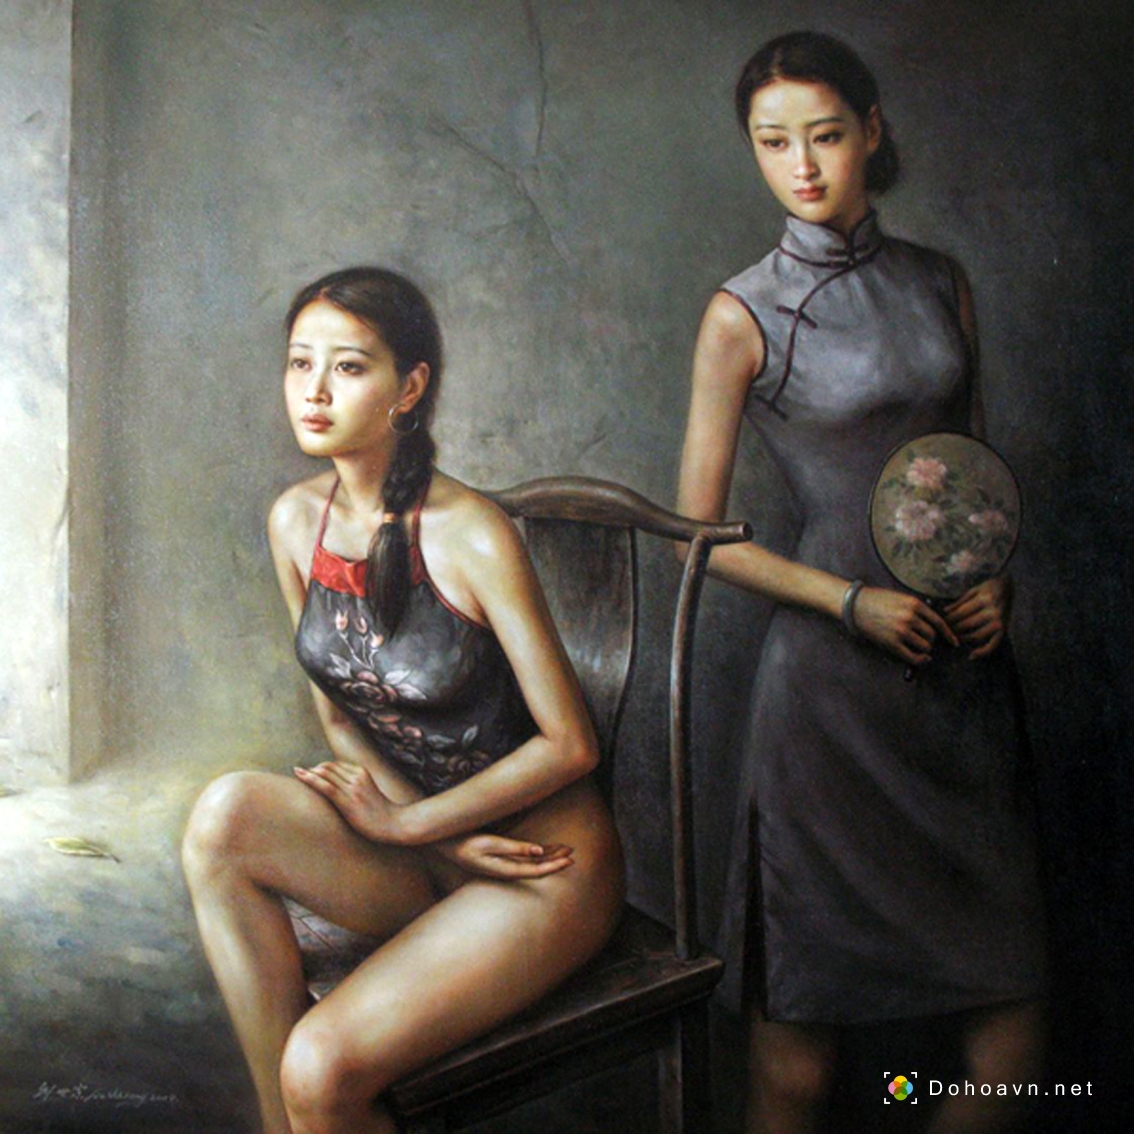 Xem artwork về tranh bán nude của Liu Shizong